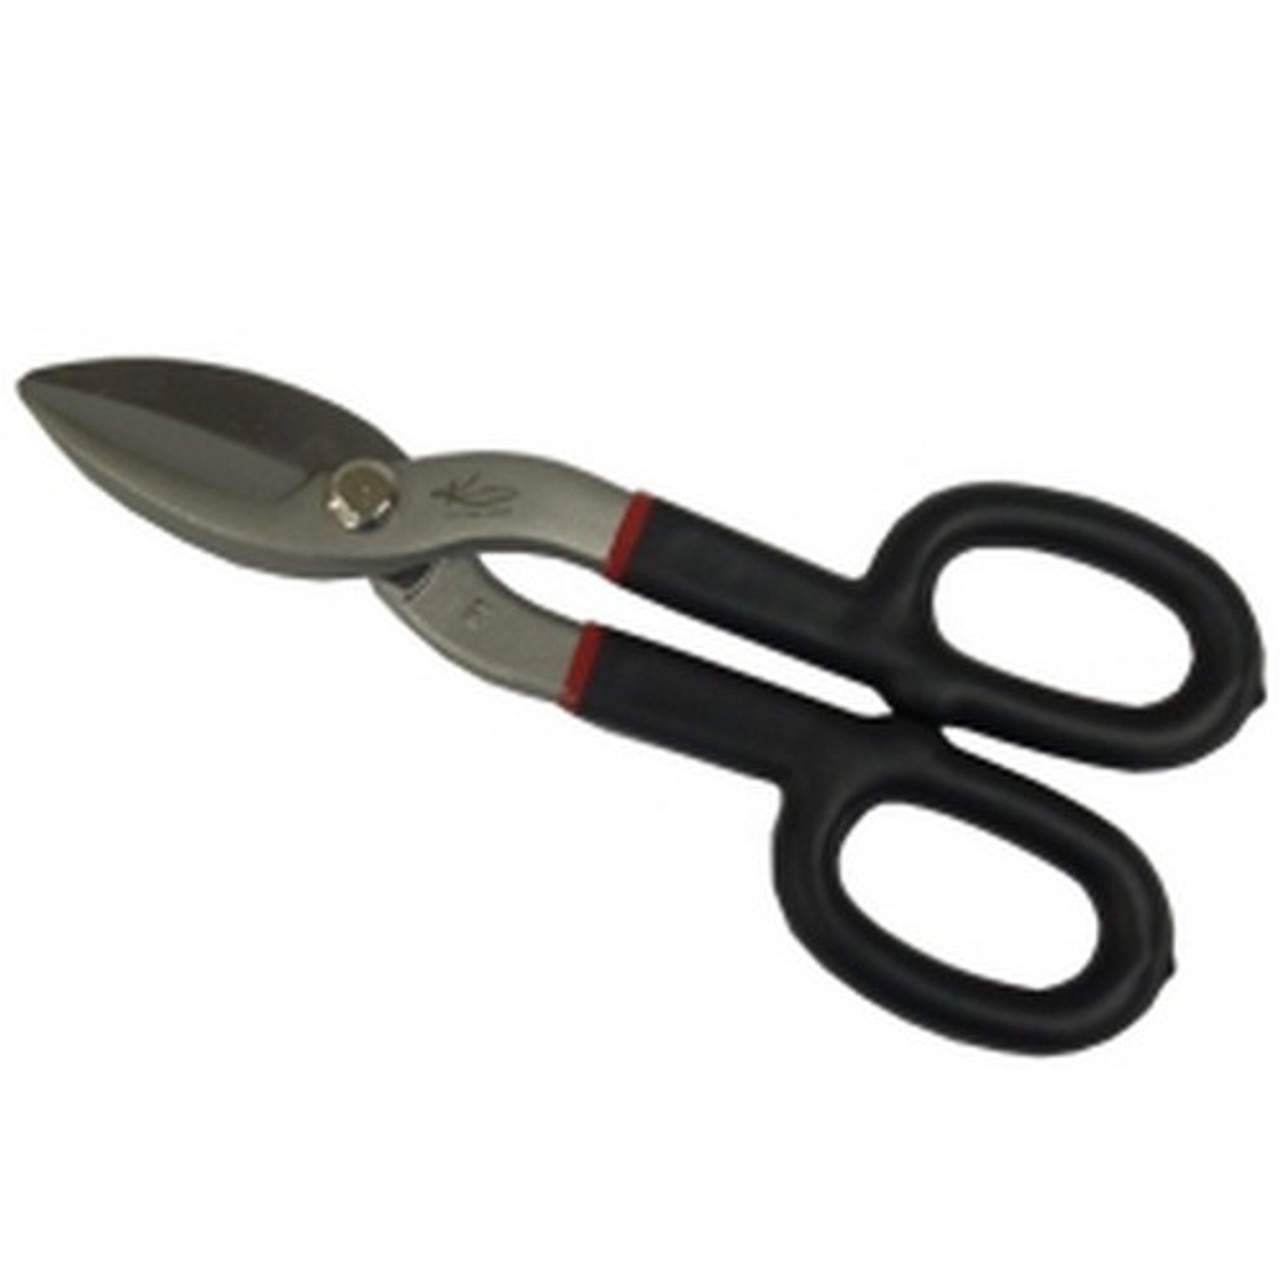 K Tool International KTI72380 8 Tin Snips Straight cut